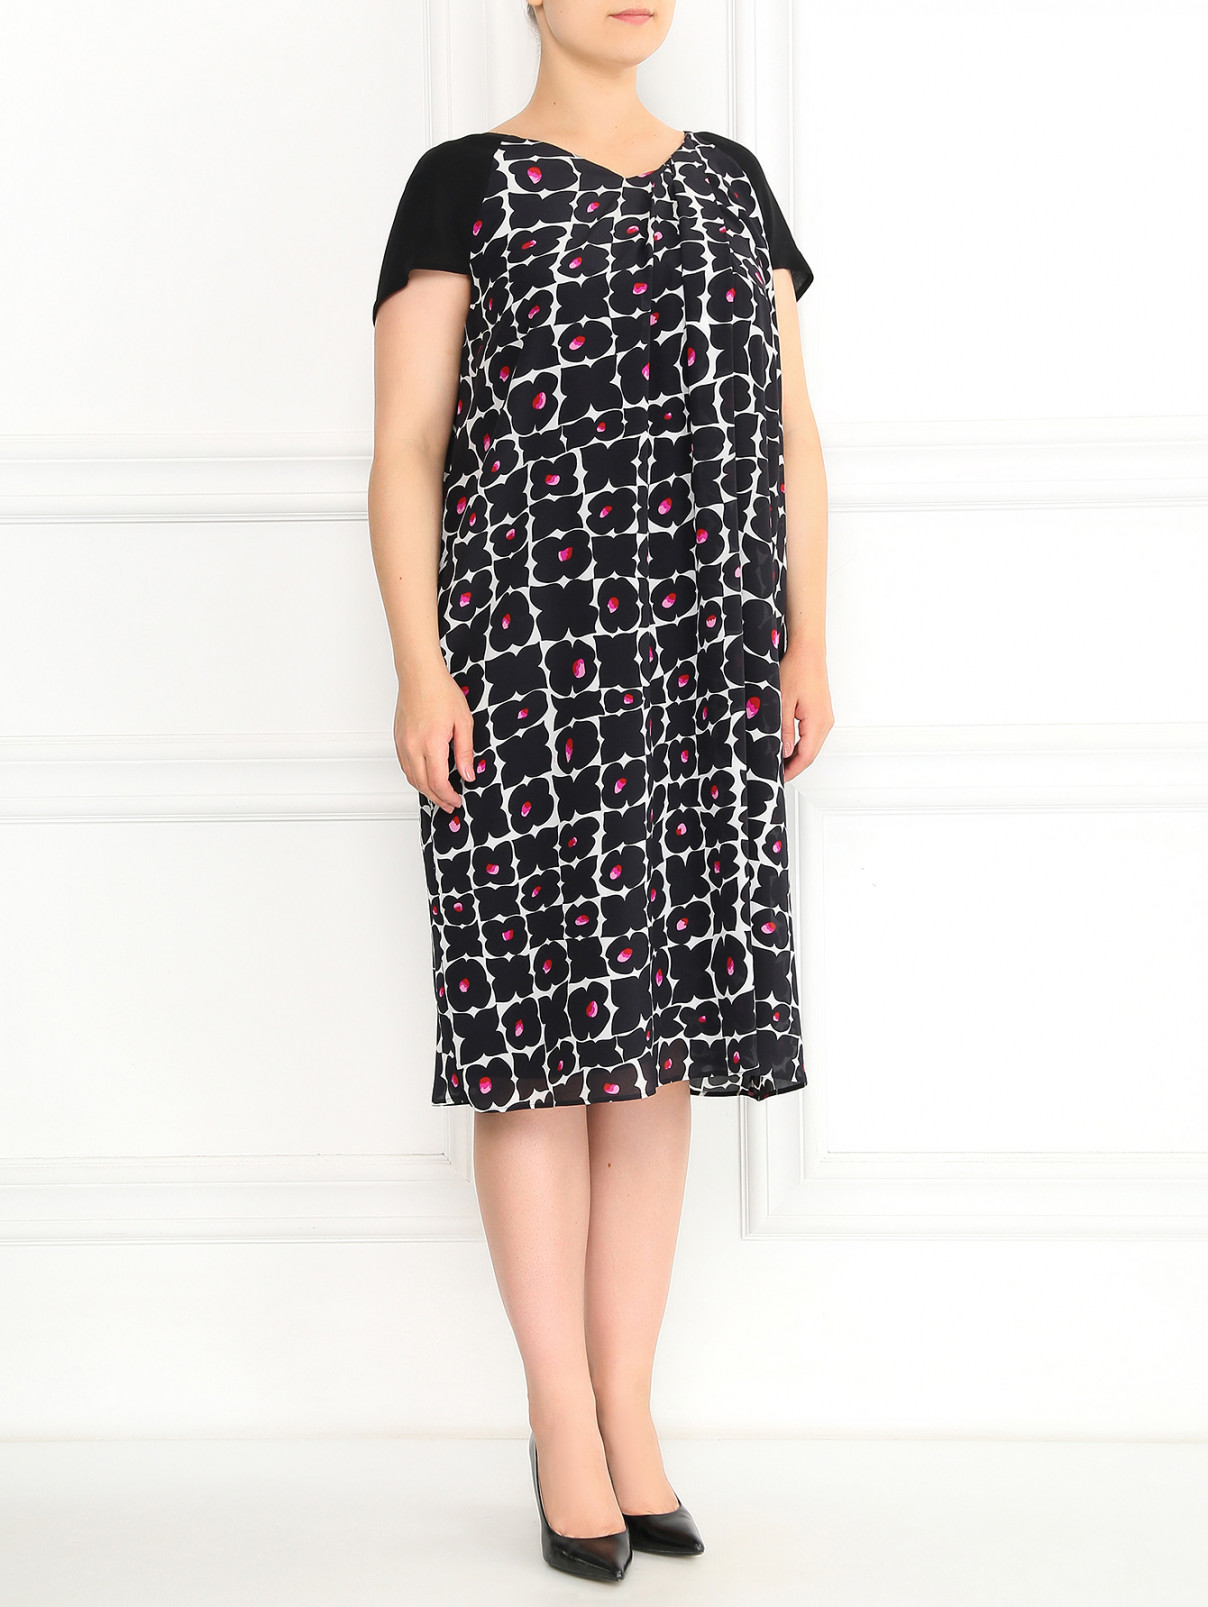 Платье из шелка с узором Marina Rinaldi  –  Модель Общий вид  – Цвет:  Черный